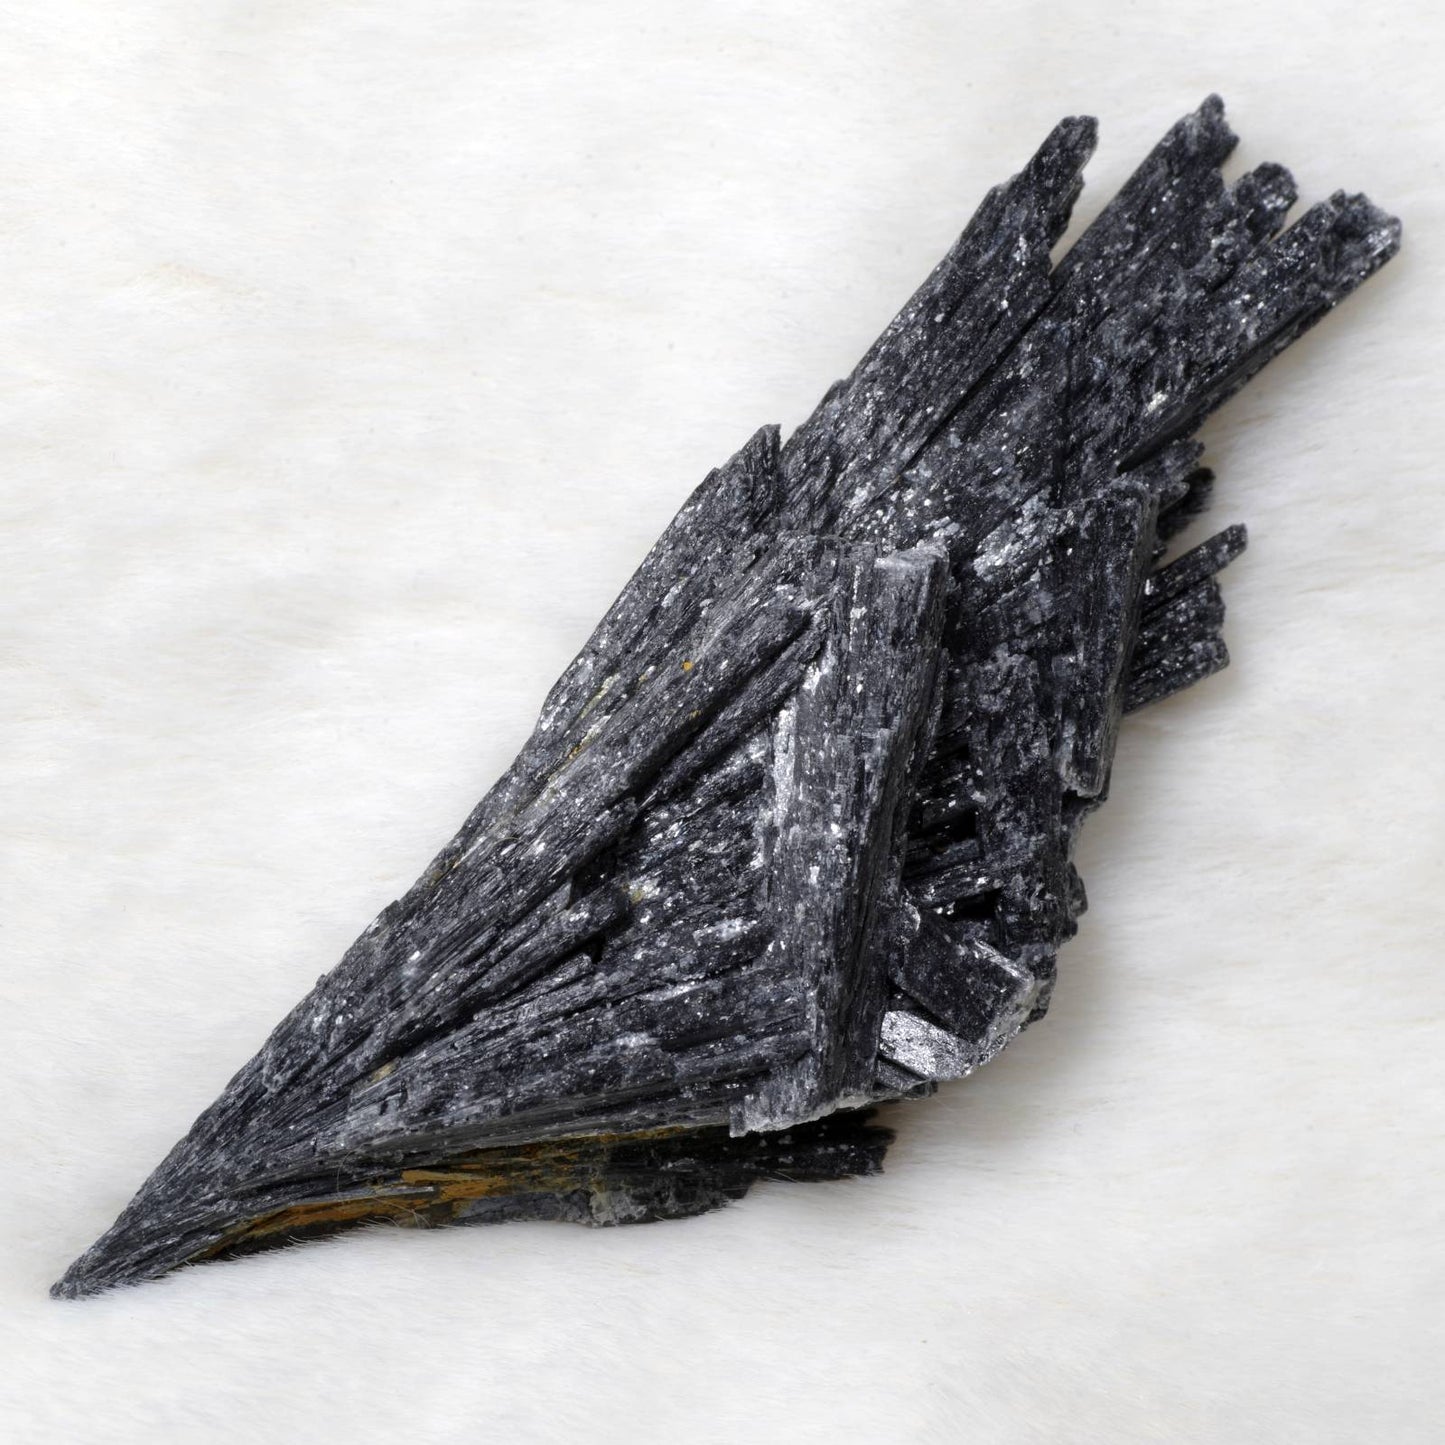 カイヤナイト 藍晶石 黒 ブラジル産1 Black Kyanite Brazil 原石 写真現物 動画あり